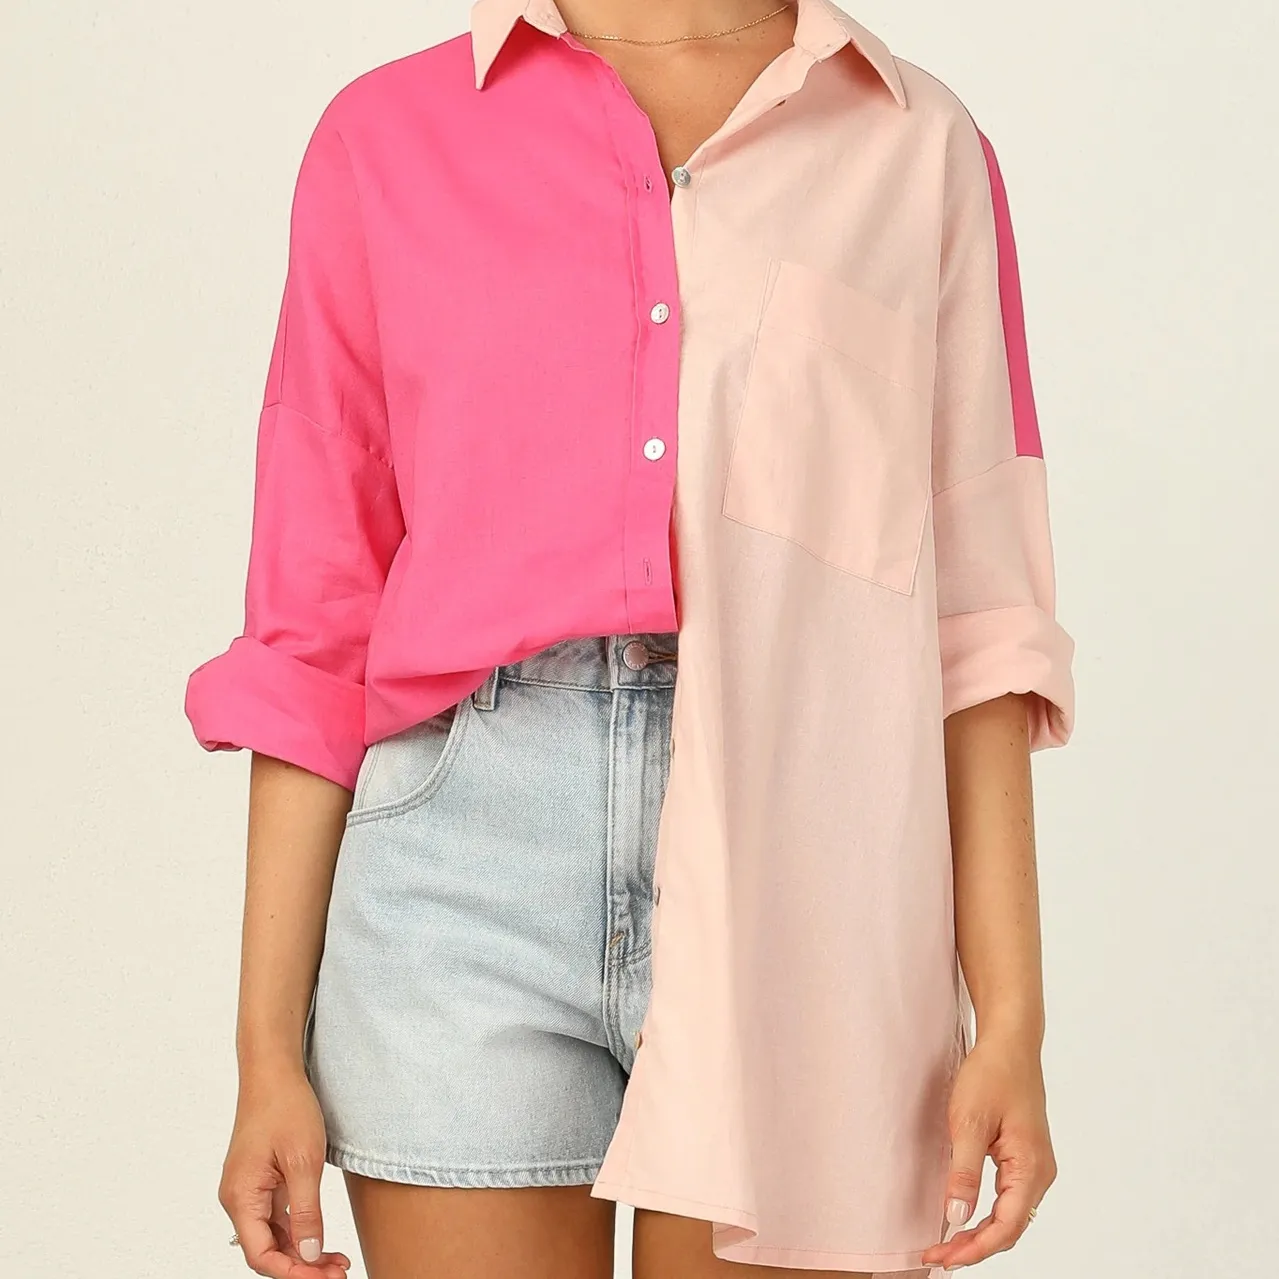 women fashion design contrast color shirts blouses